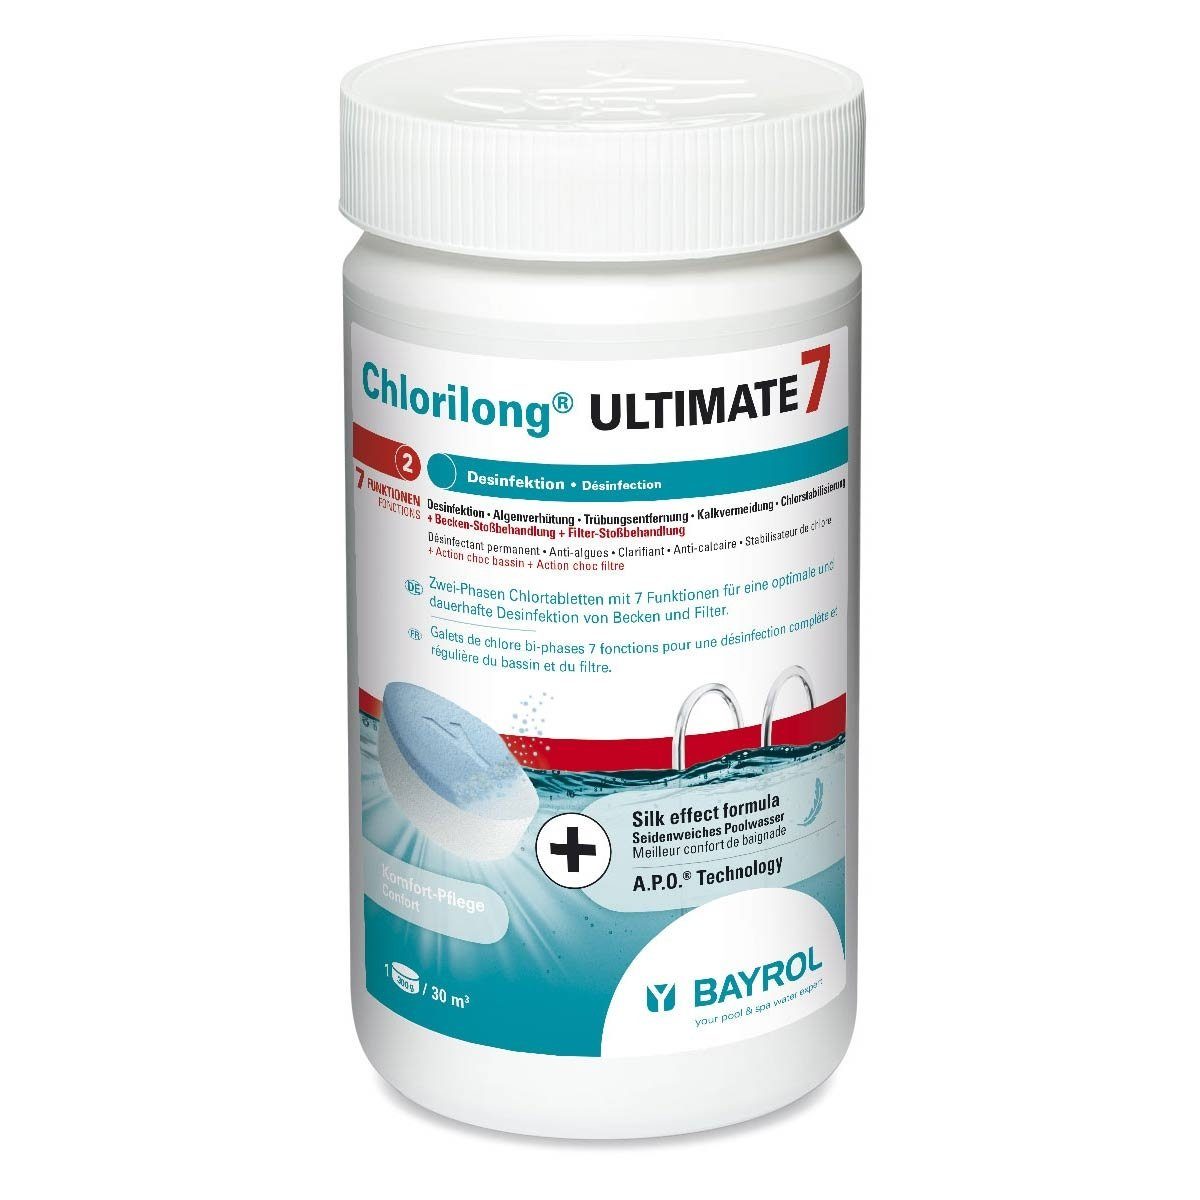 Bayrol Poolpflege Bayrol Chlorilong ULTIMATE 7 1,2kg 300-g-Tabletten 7-fach-Funktion